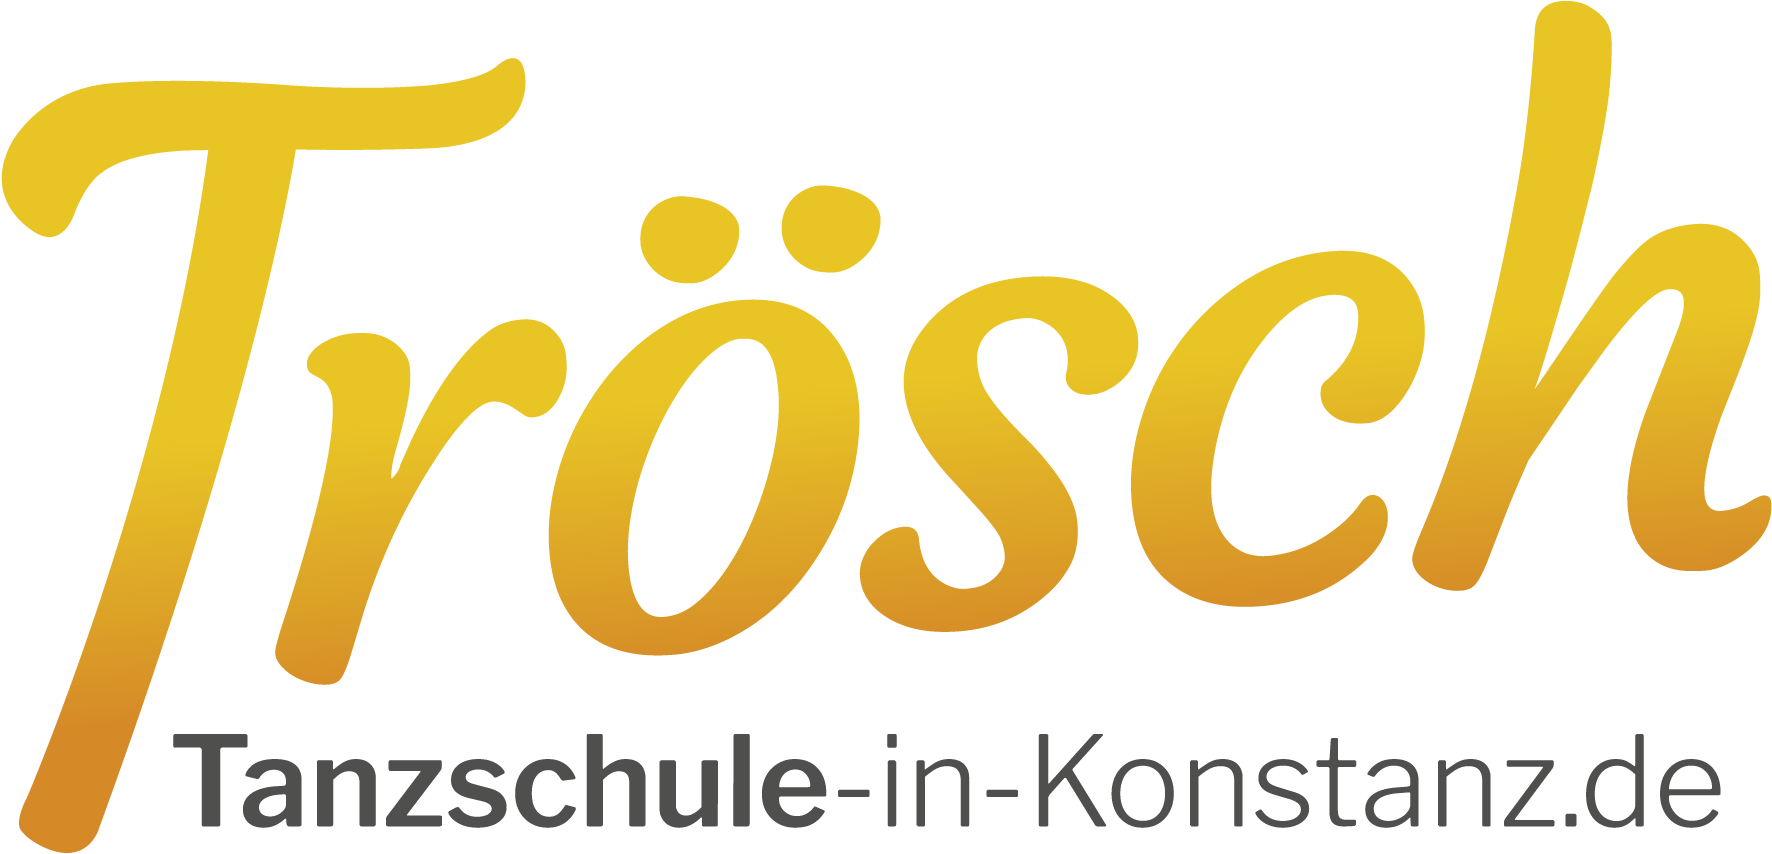 Tanzschule Troesch Konstanz Logo